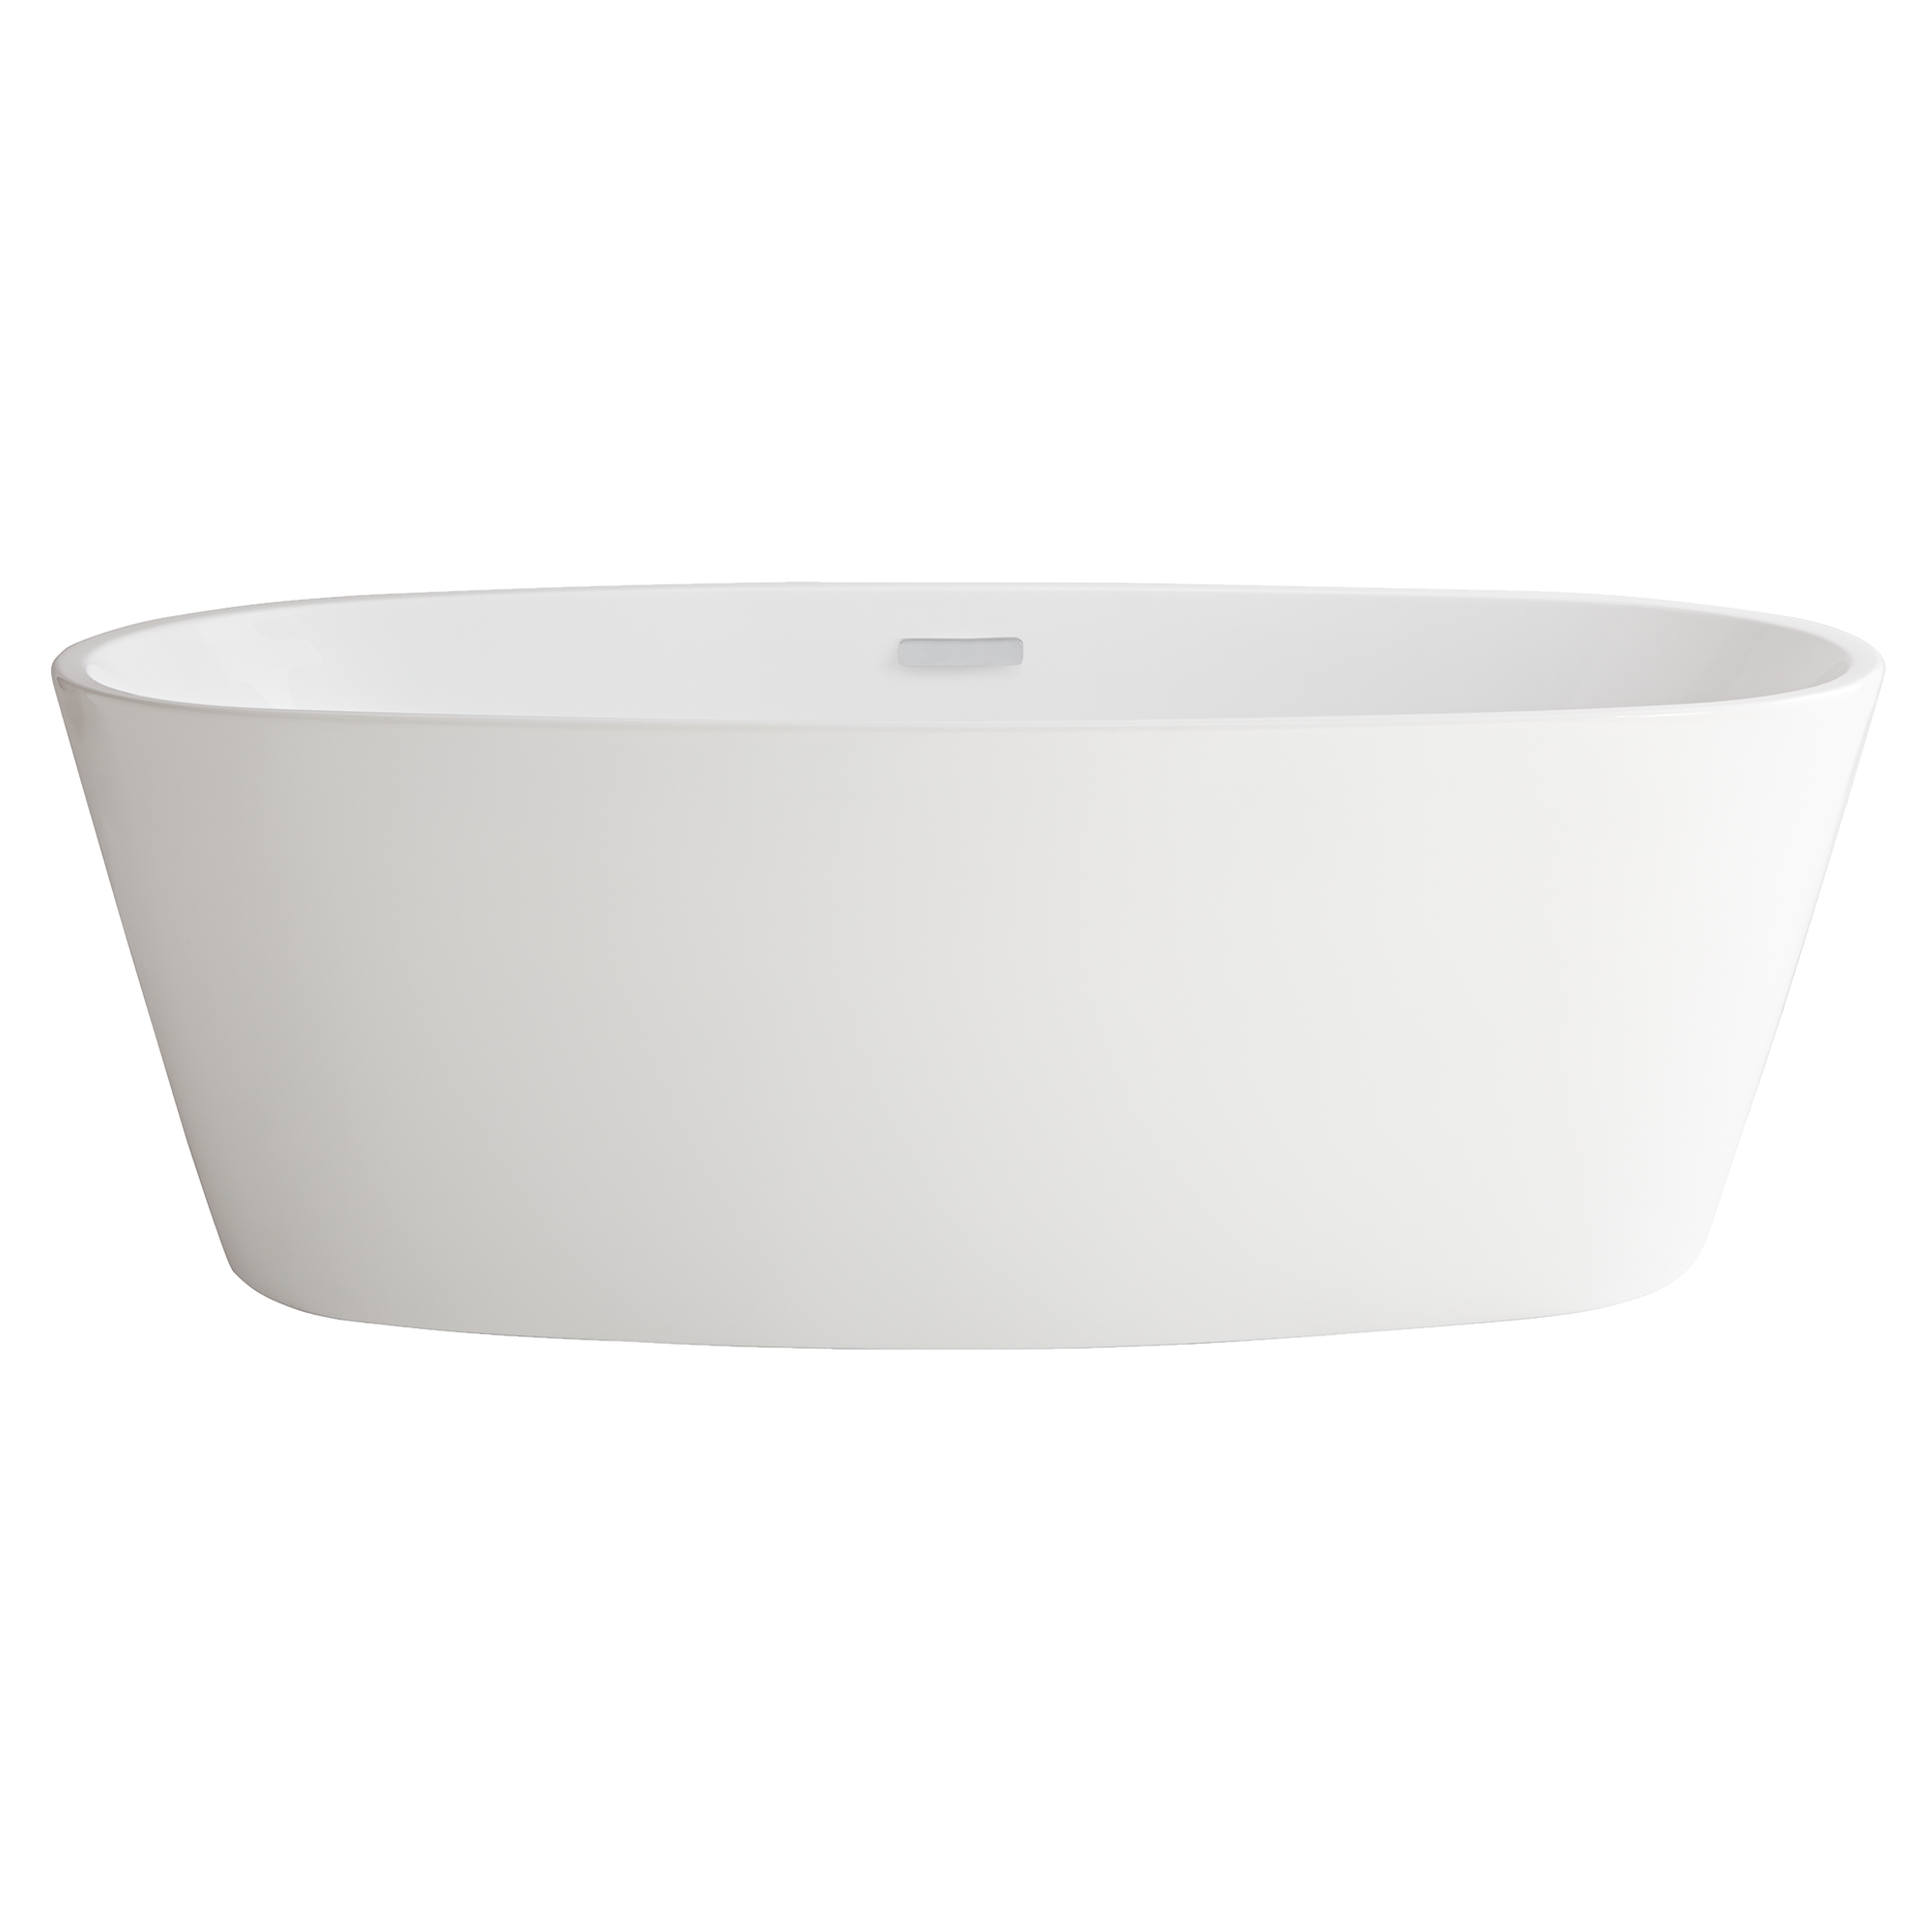 White Bathtub PNG Image Background